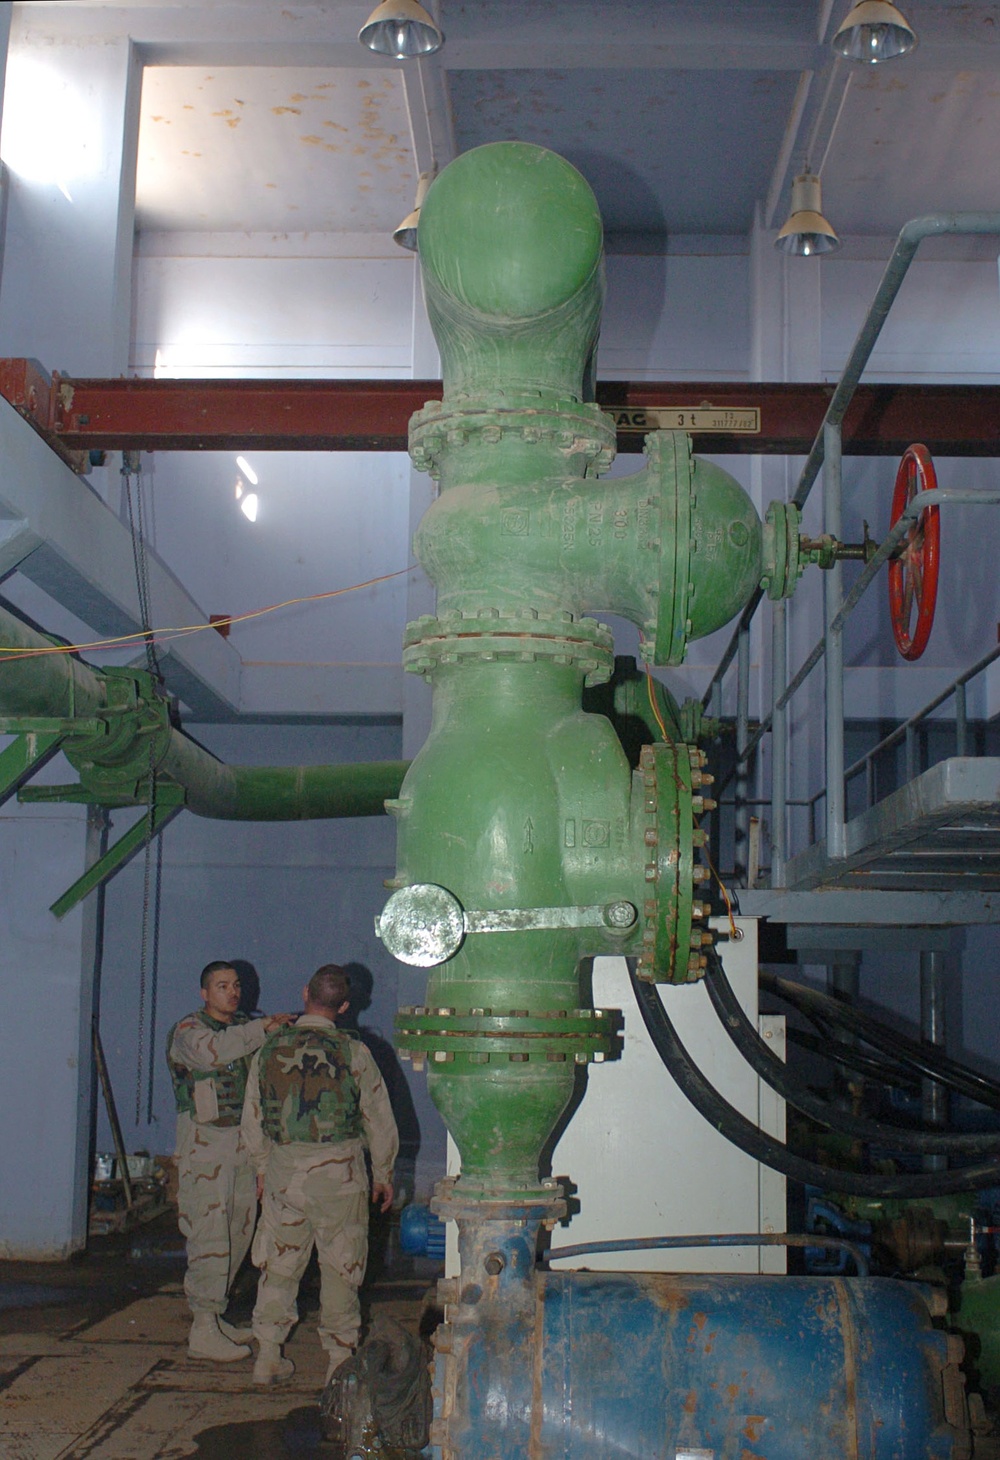 Tigris Water Pump Station